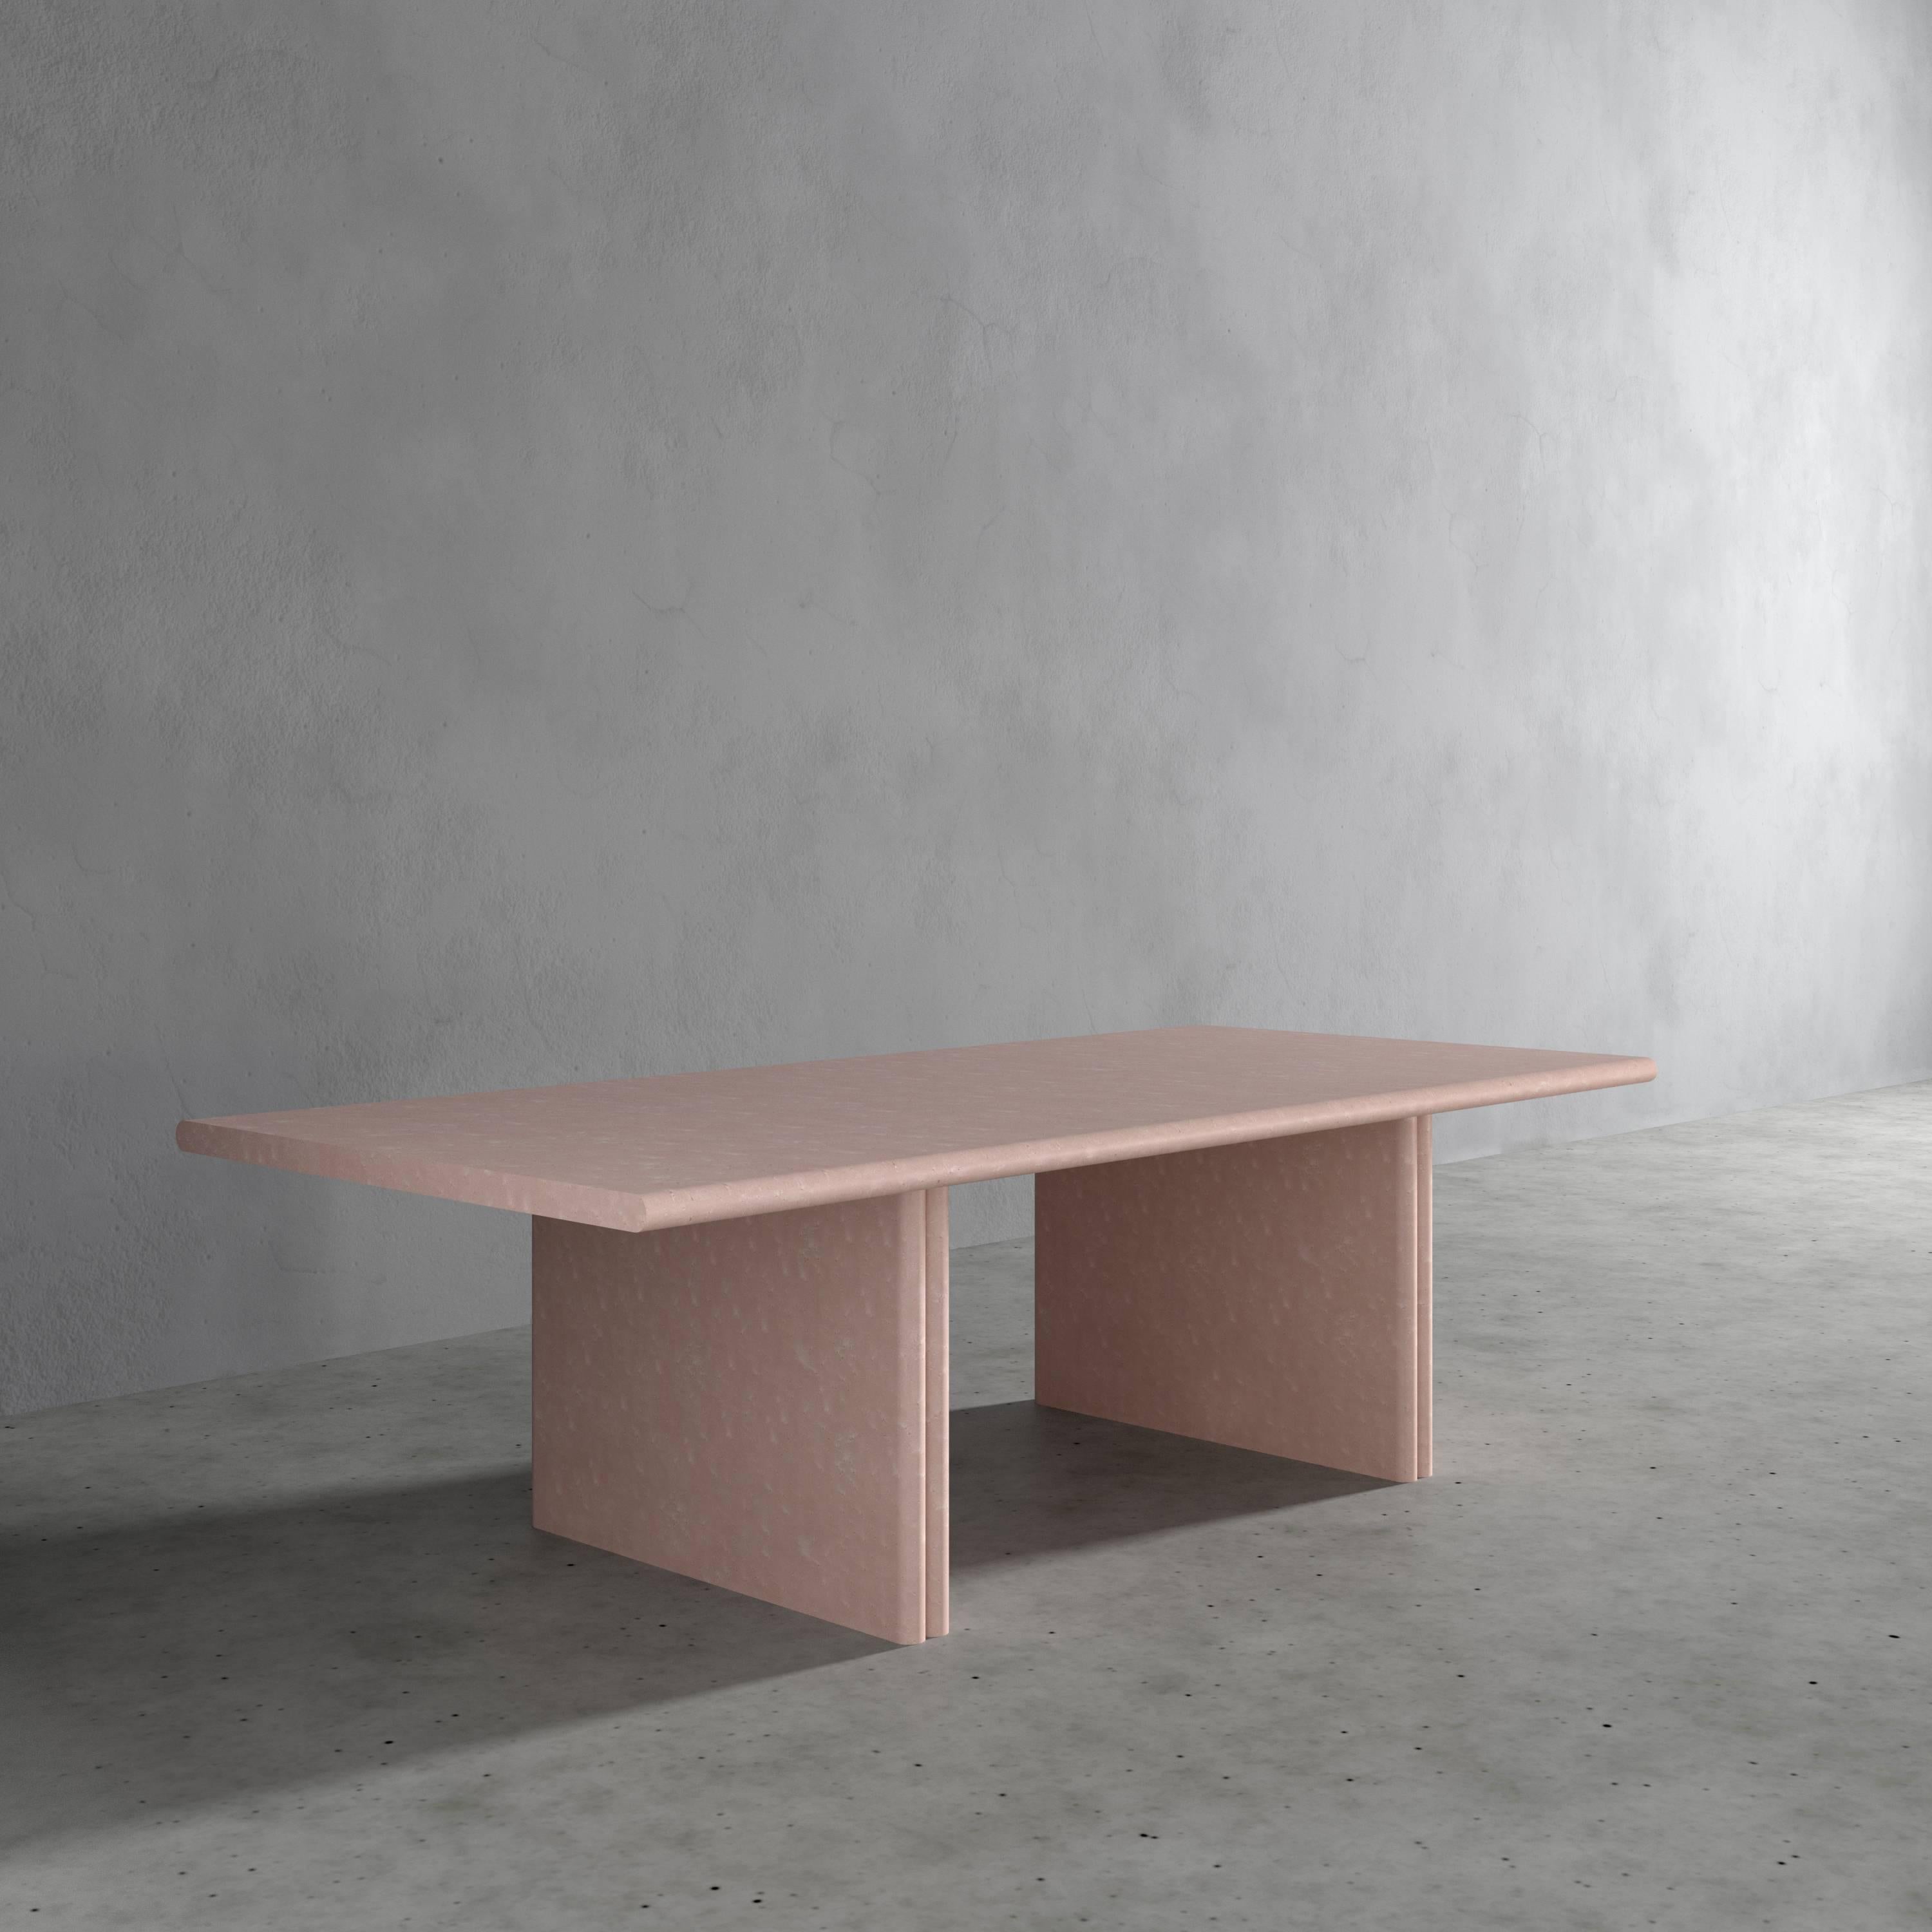 Jacques Table de salle à manger rectangulaire rose pastel par Fred&Juul
Dimensions : D 120 x L 260 x H 74 cm.
MATERIAL : Placage d'érable piqué sur MDF.

Disponible en différentes couleurs. Des tailles, matériaux ou finitions personnalisés sont